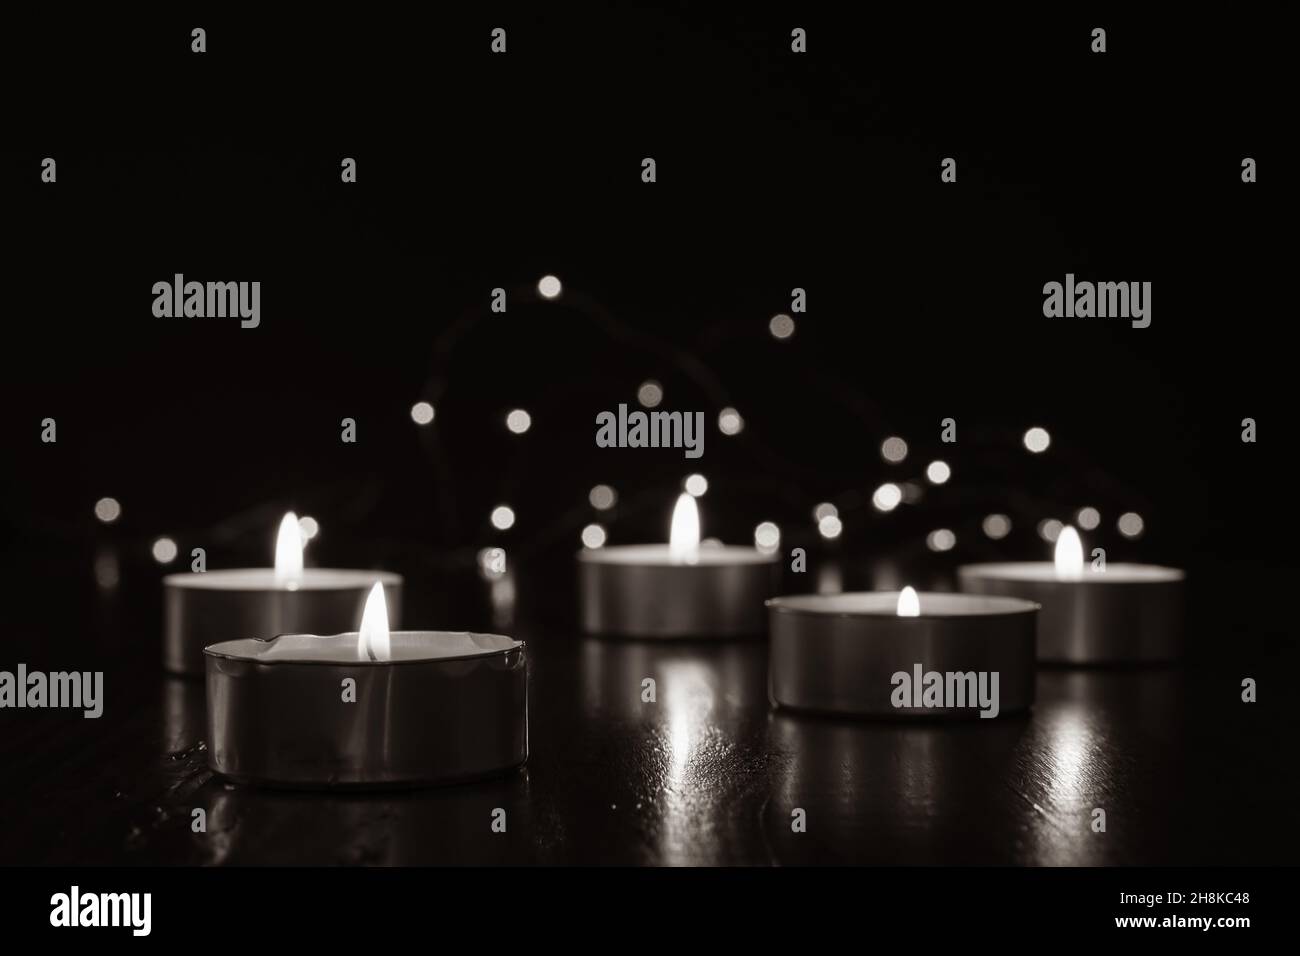 Mini candele di luce del tè che bruciano al buio con luci fairy e fiamma che si riflette su di tavola di legno scuro con spazio copia Foto Stock